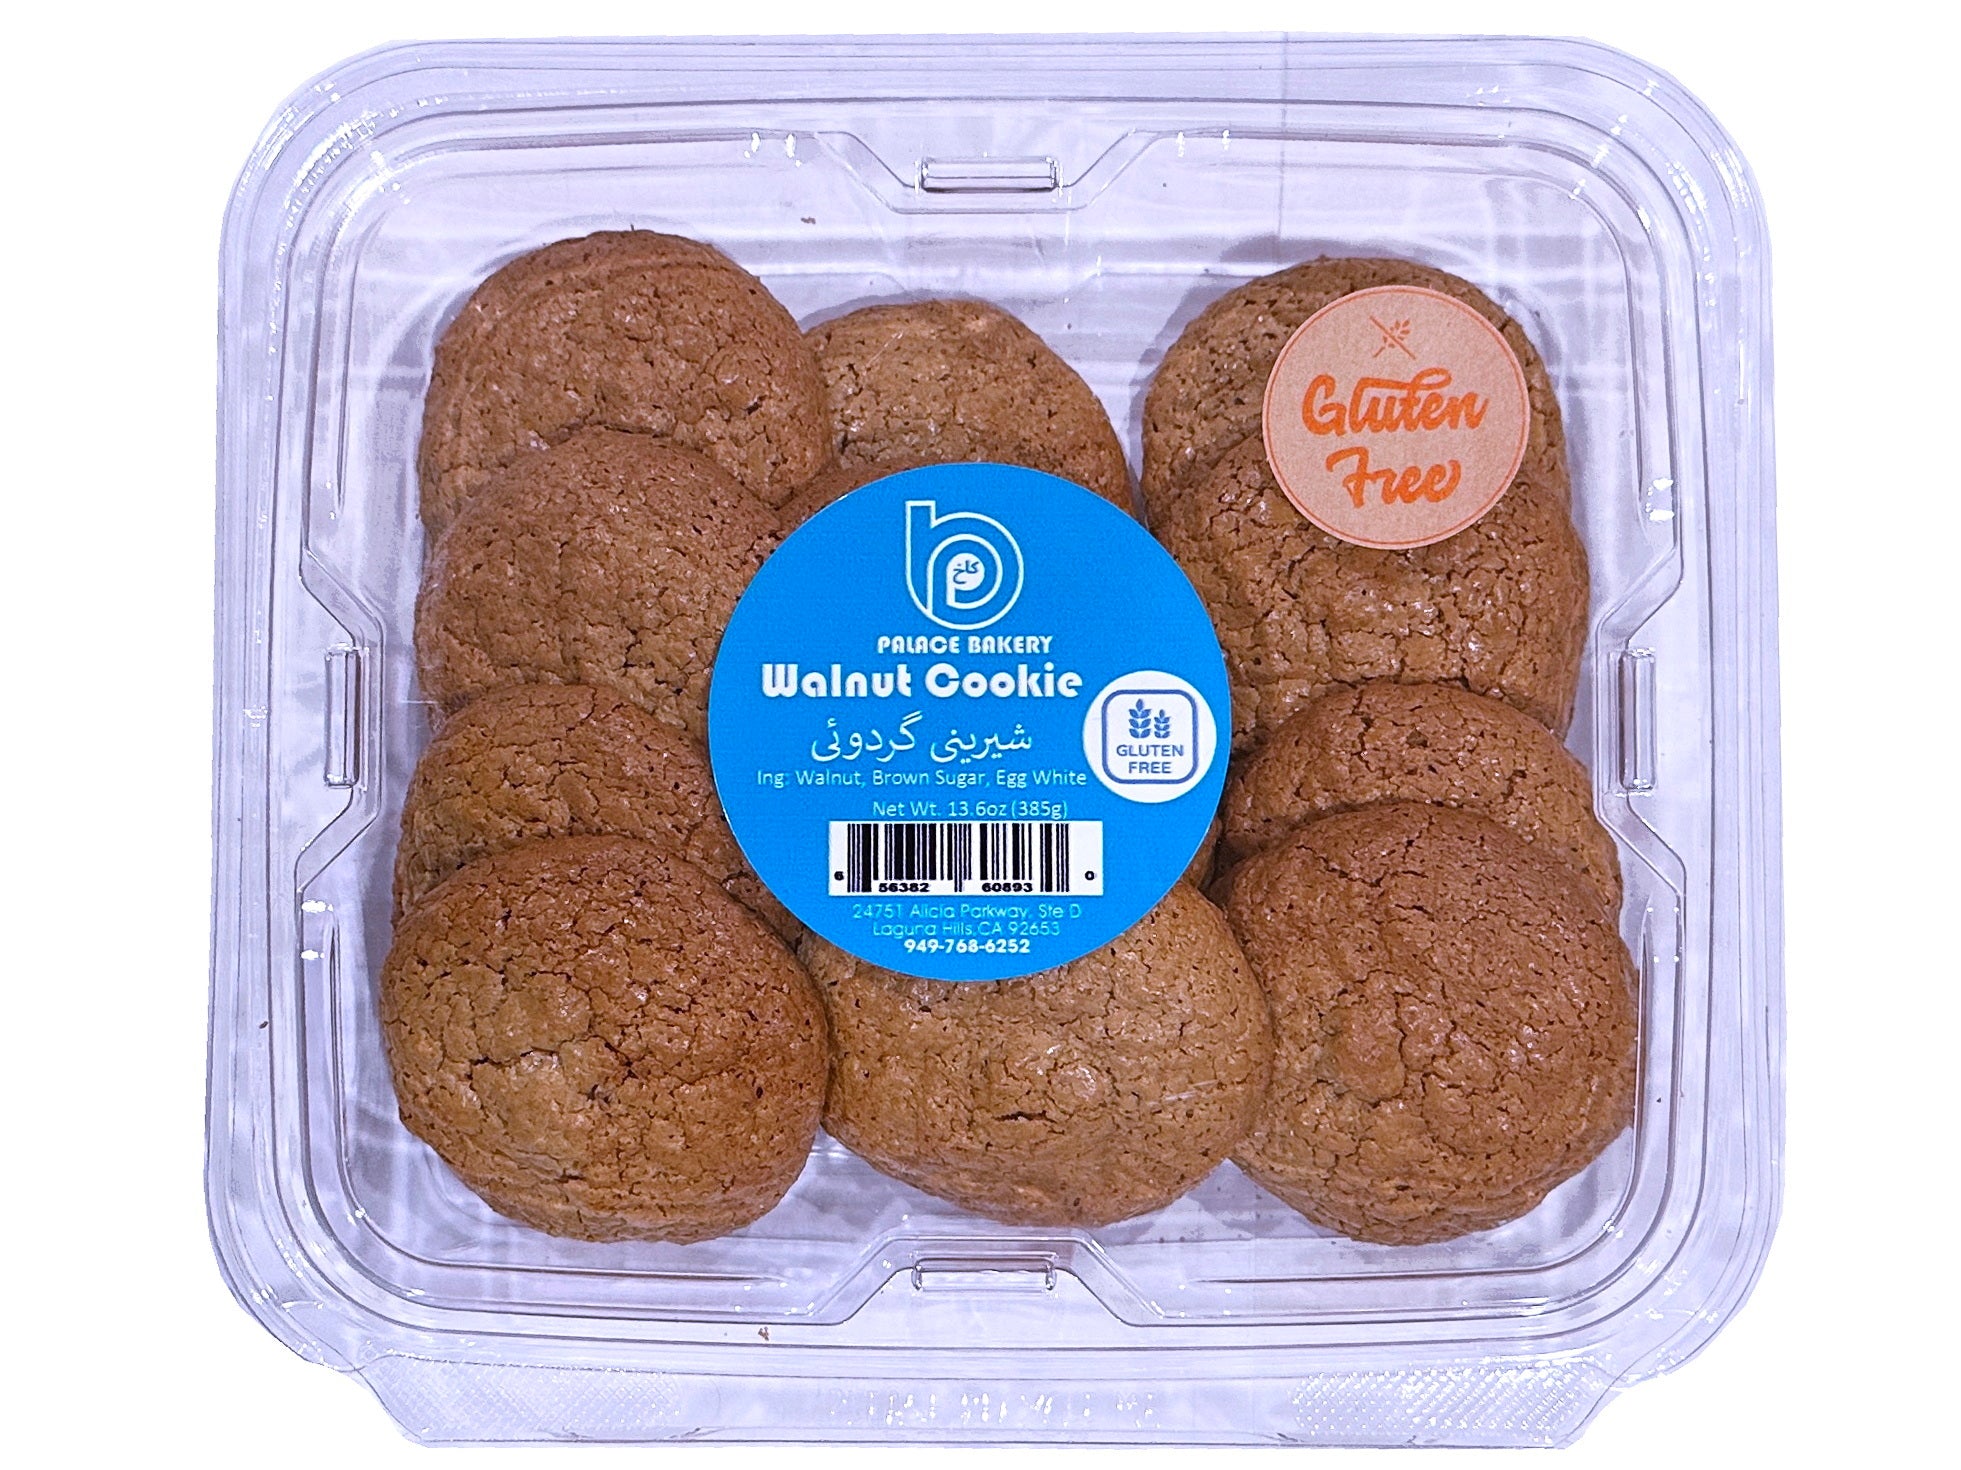 Gluten-Free Walnut Cookie (Shirini Gerdooee)